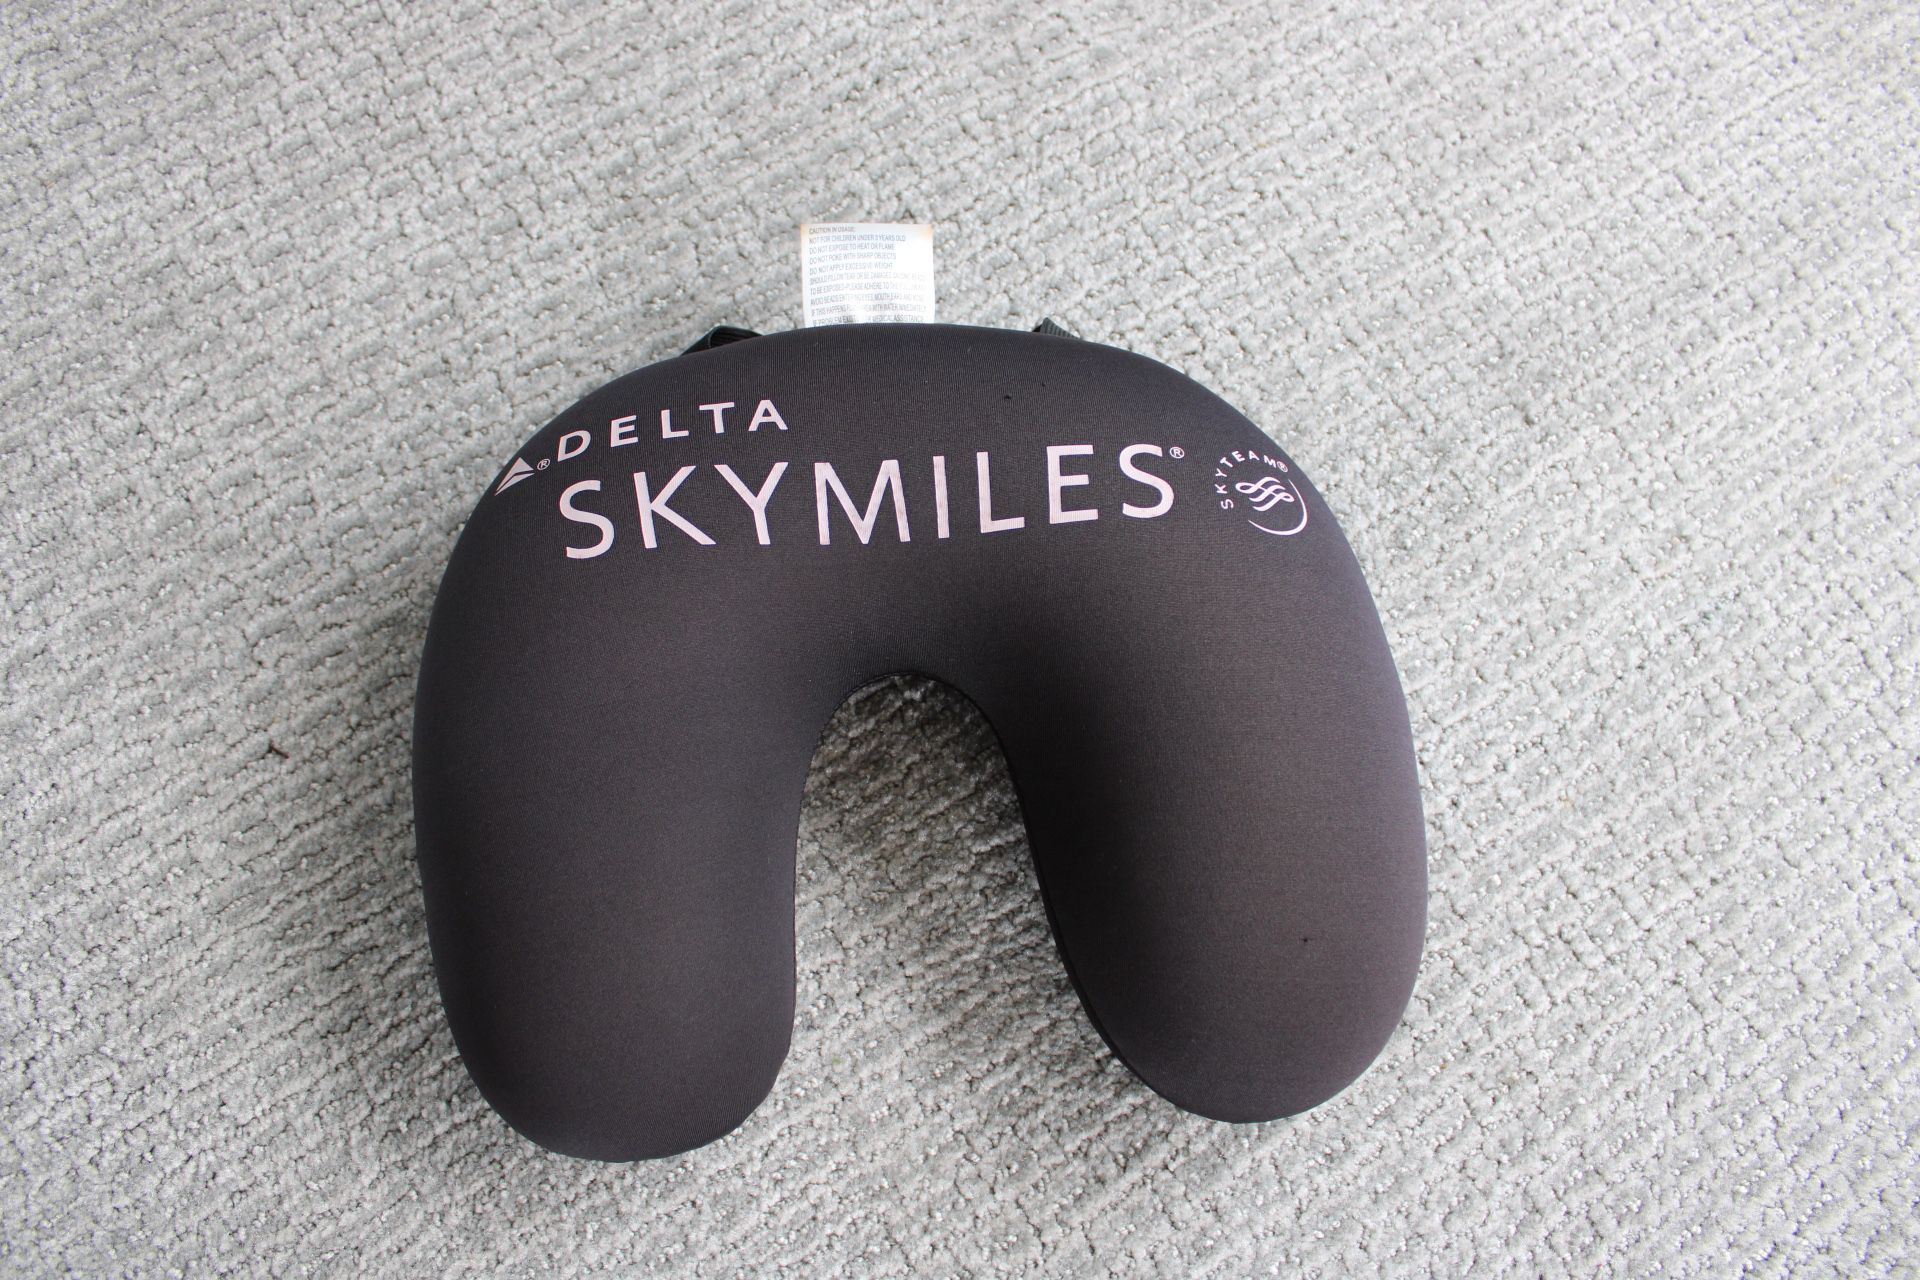 Delta Skymiles Skyteam Airplane Neck Pillow